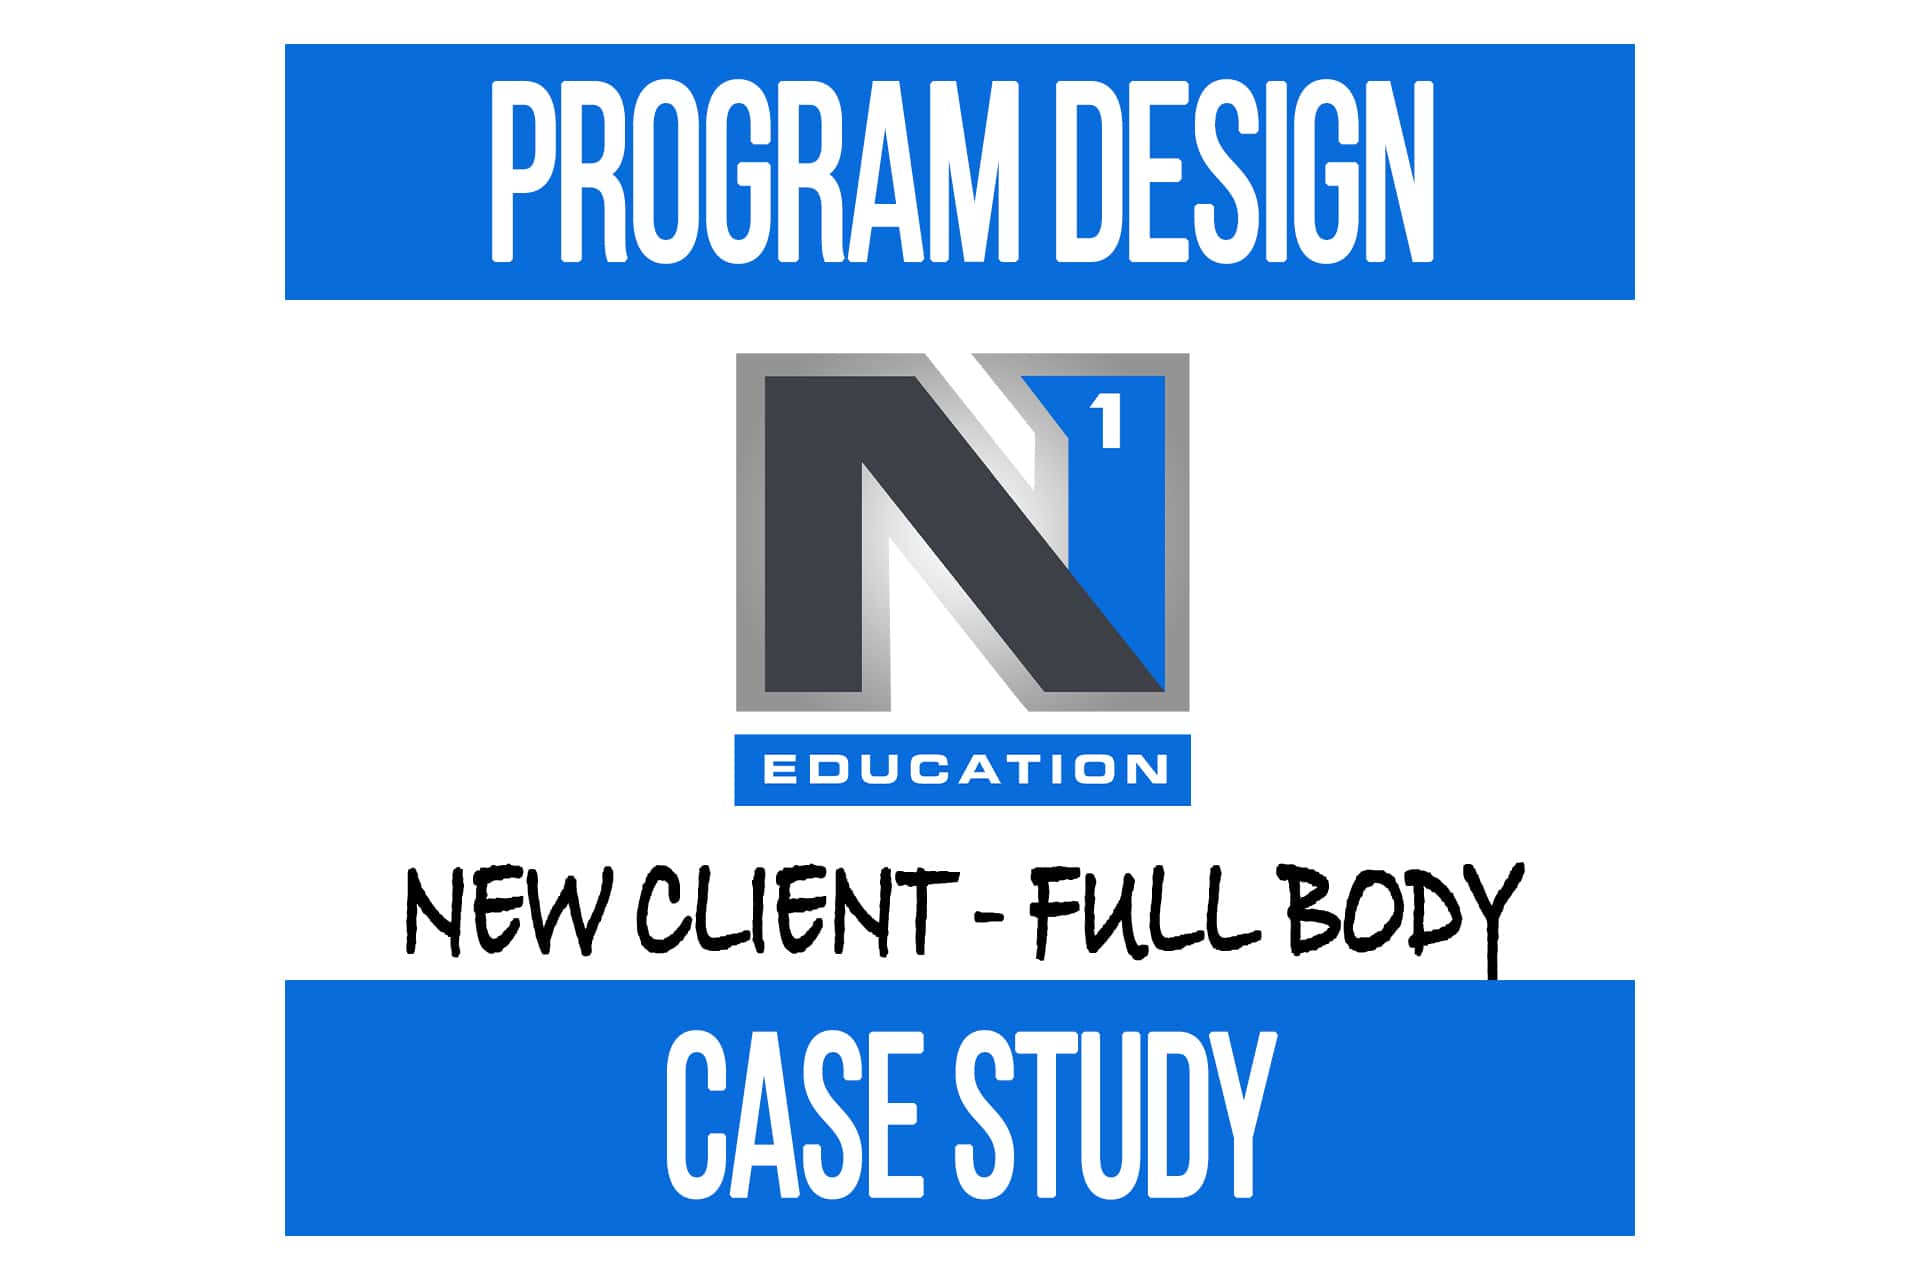 Program Design Case Study: New Client Full Body